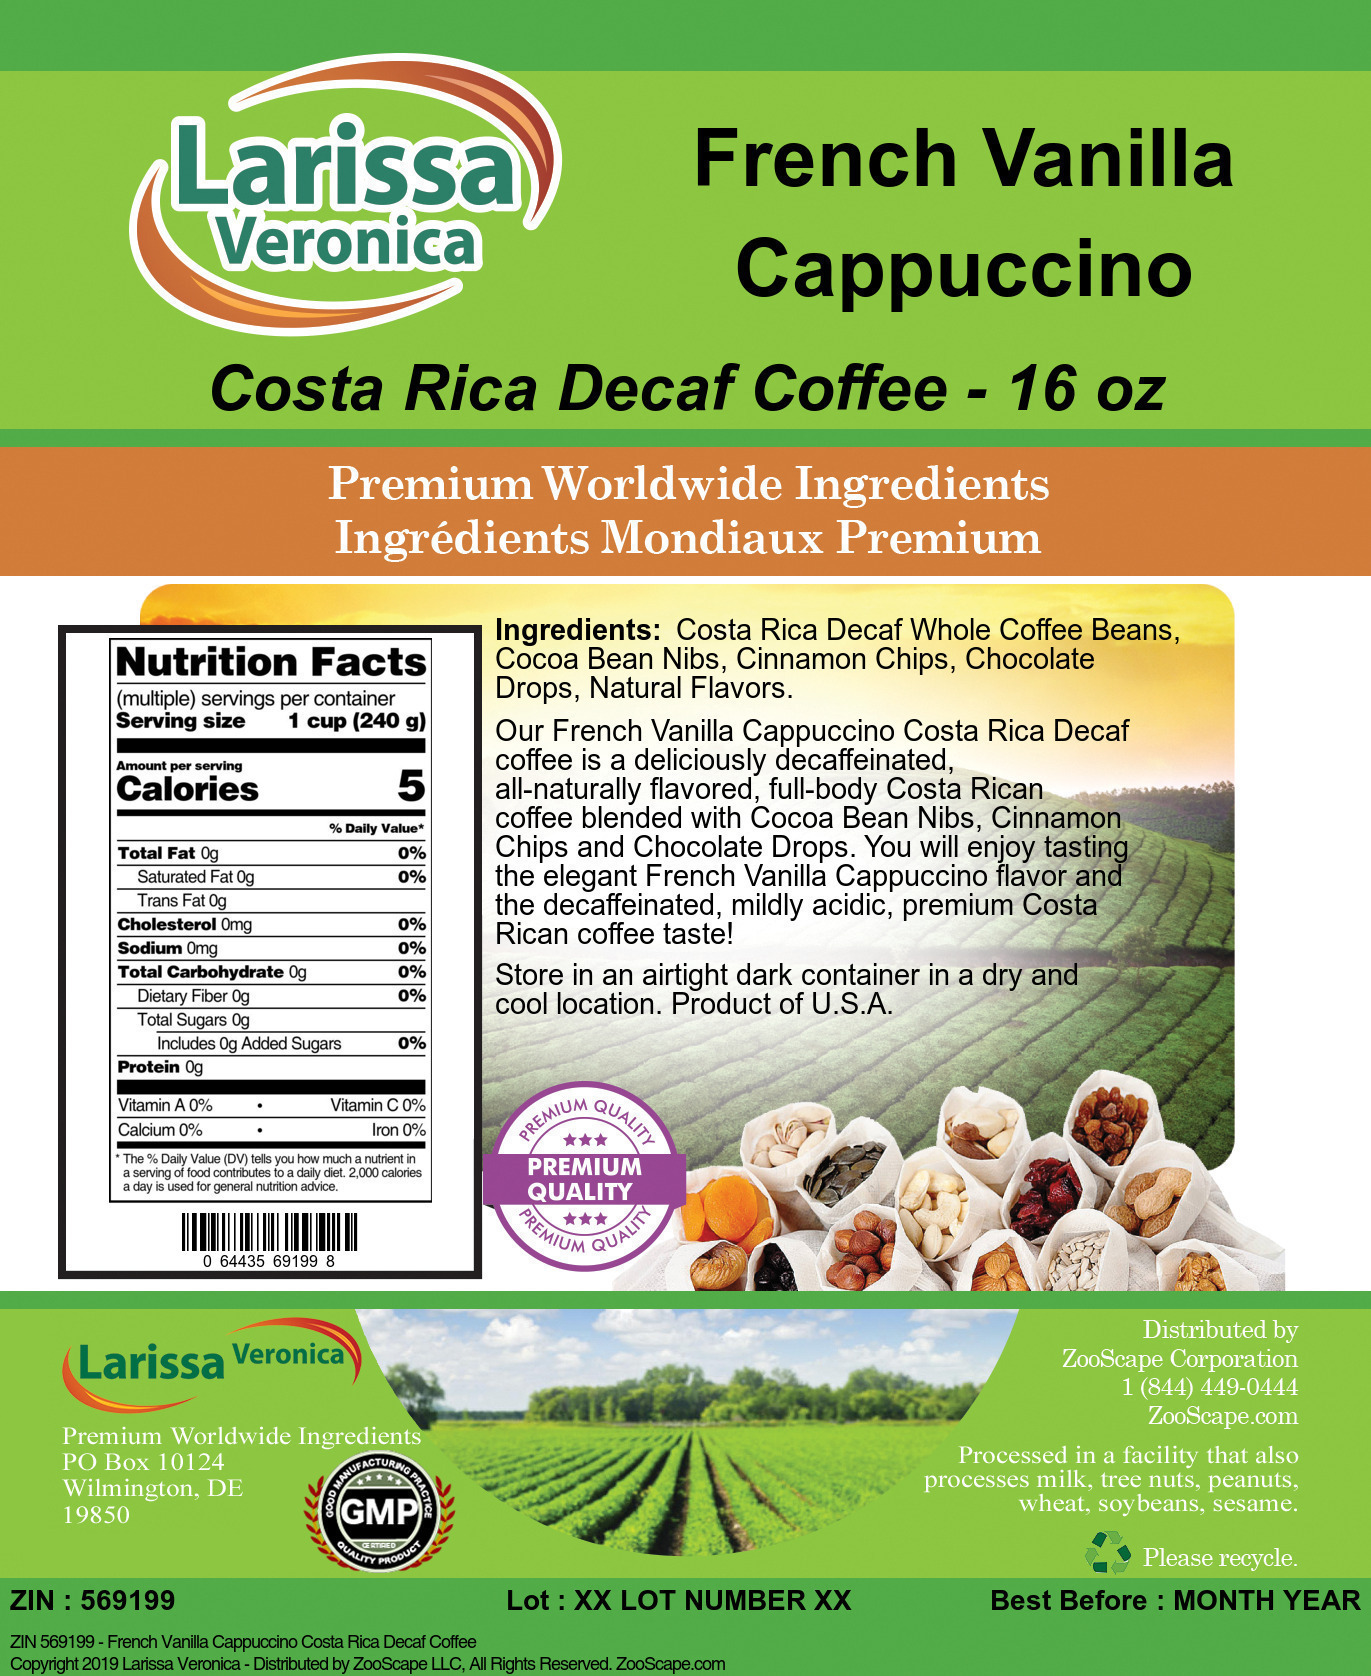 French Vanilla Cappuccino Costa Rica Decaf Coffee - Label